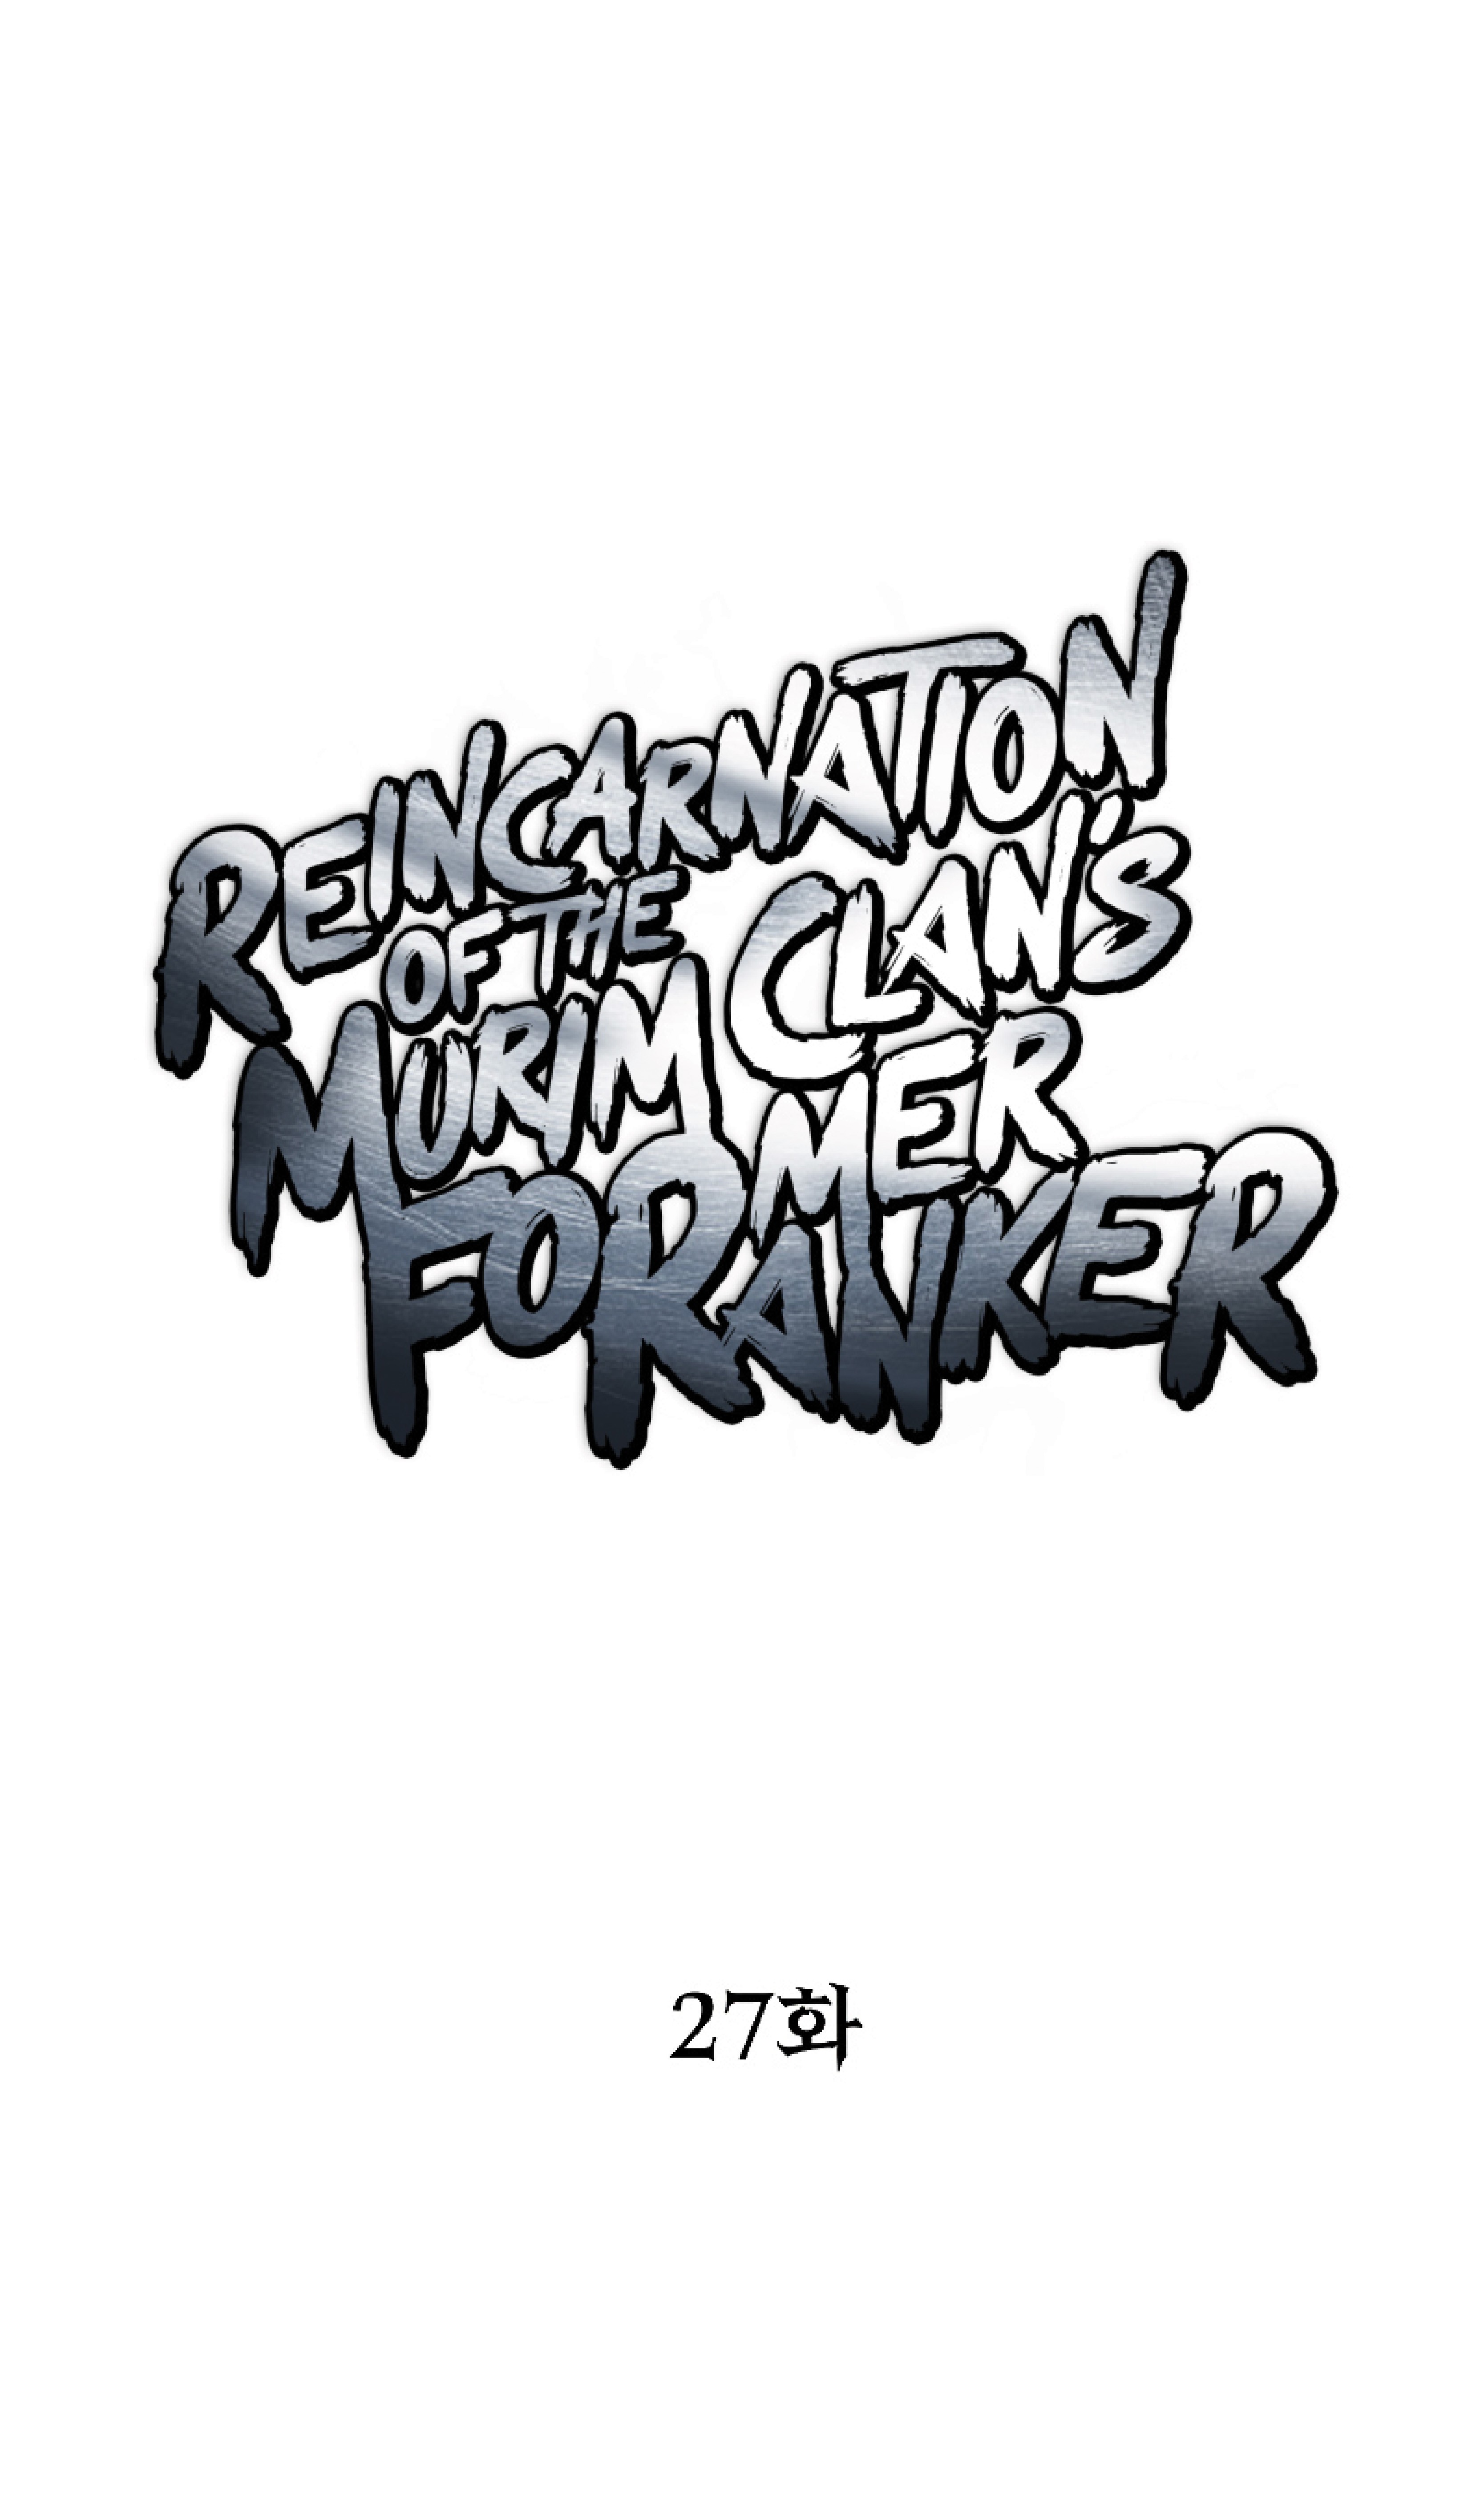 Reincarnation-of-the-Murim-Clans-Former-Ranker-27_29.jpg